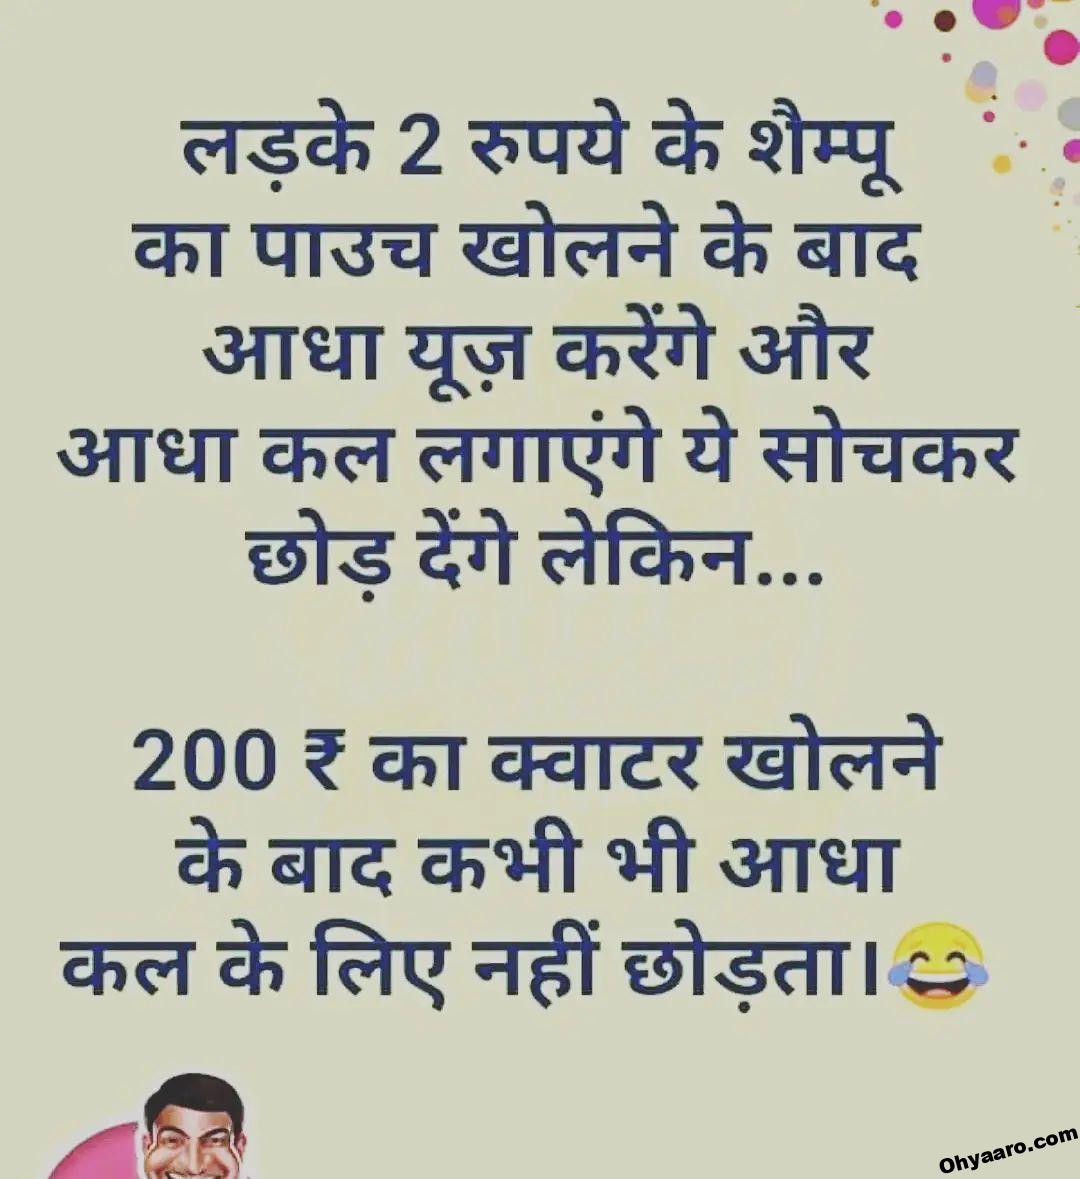 Funny Hindi Jokes Images